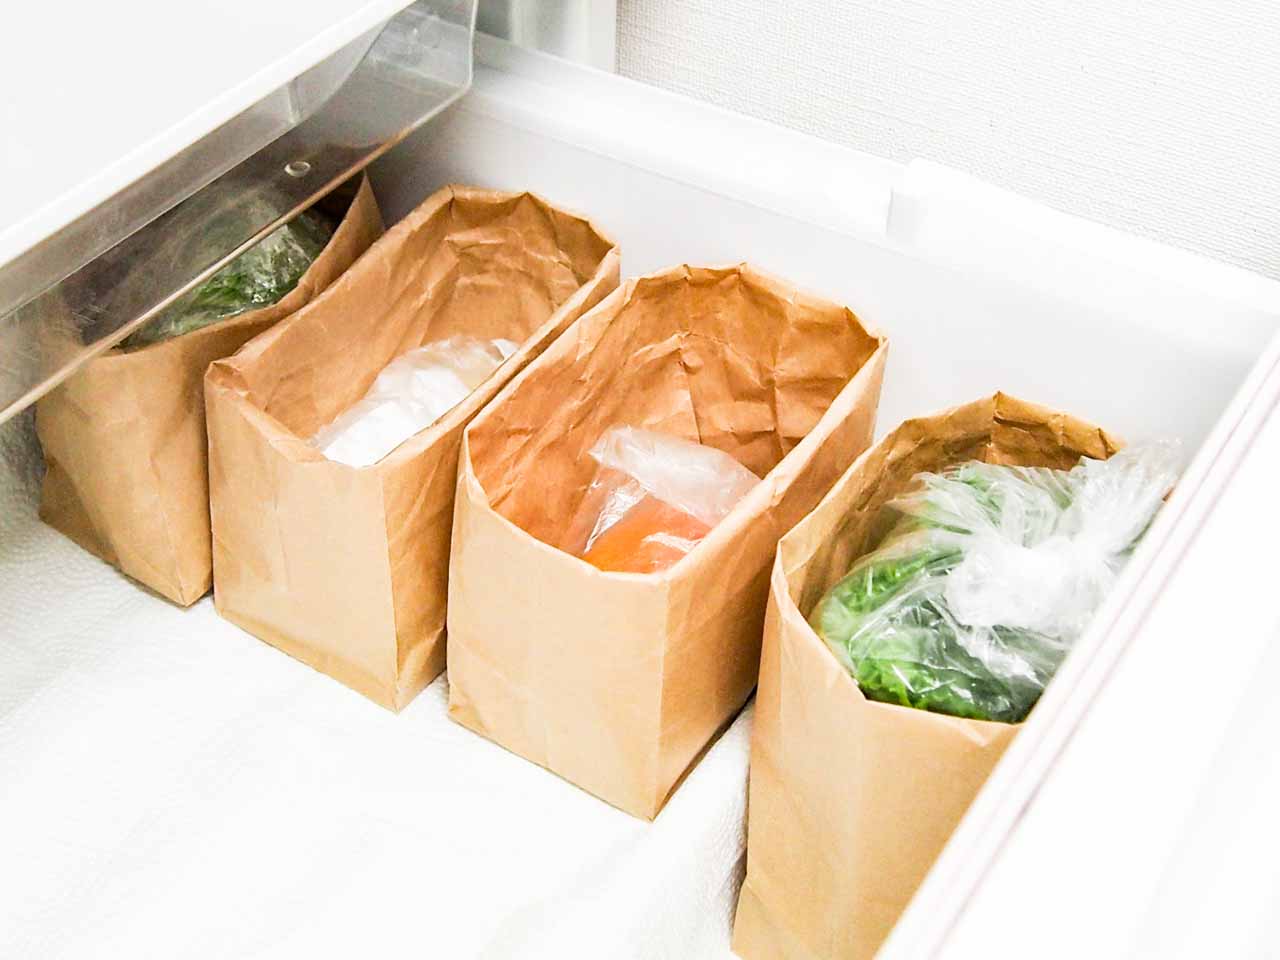 【セリア】野菜室収納にとっておきのアイテム「ガゼットバッグ」を使ってみた